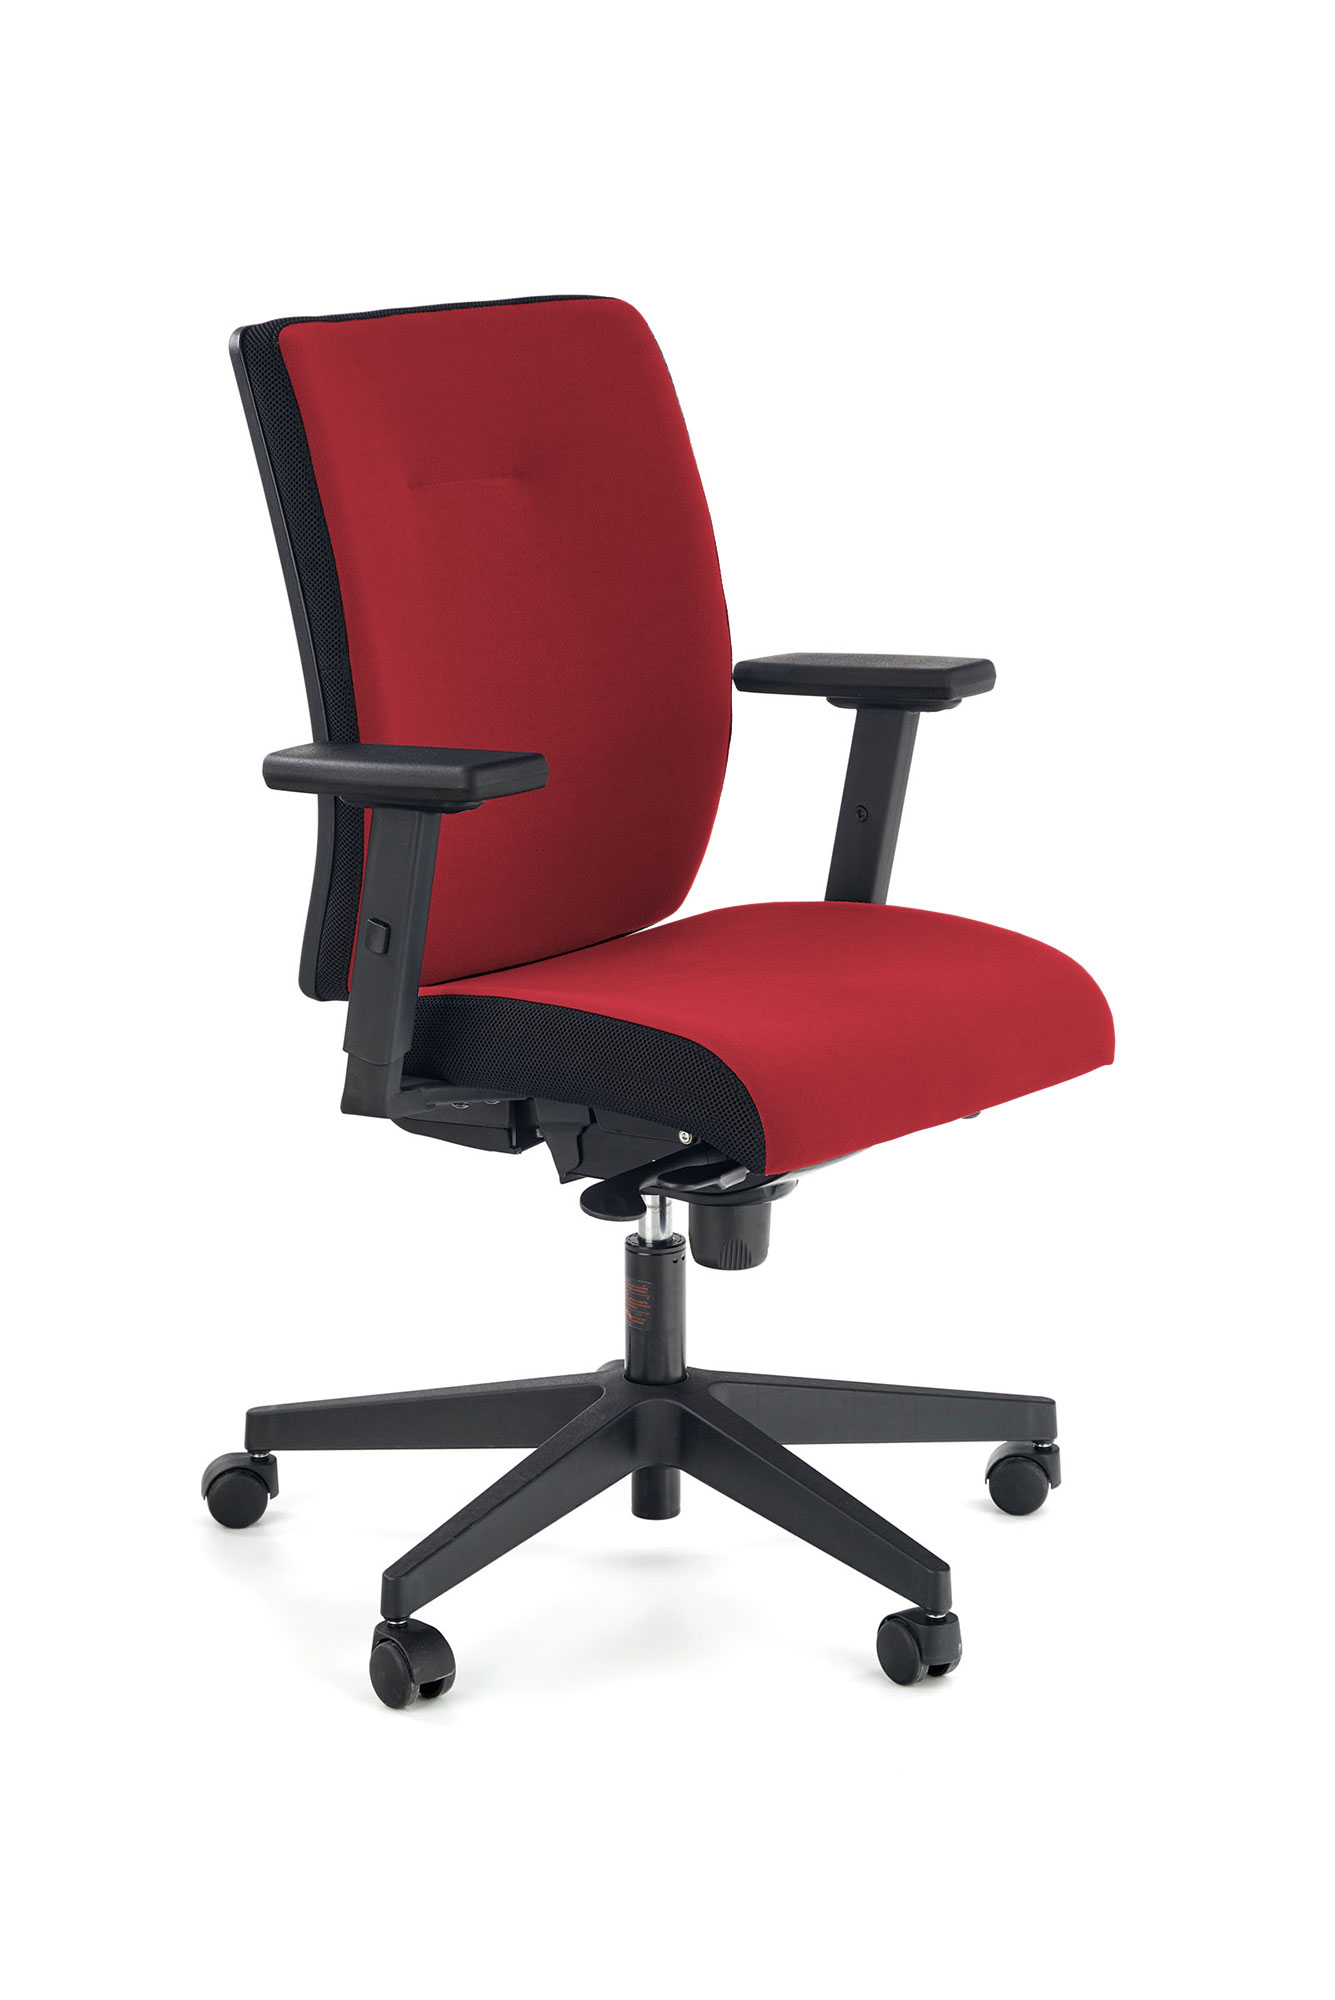 POP fotel pracowniczy, kolor: pasek boczny - czarny, front - czerwony